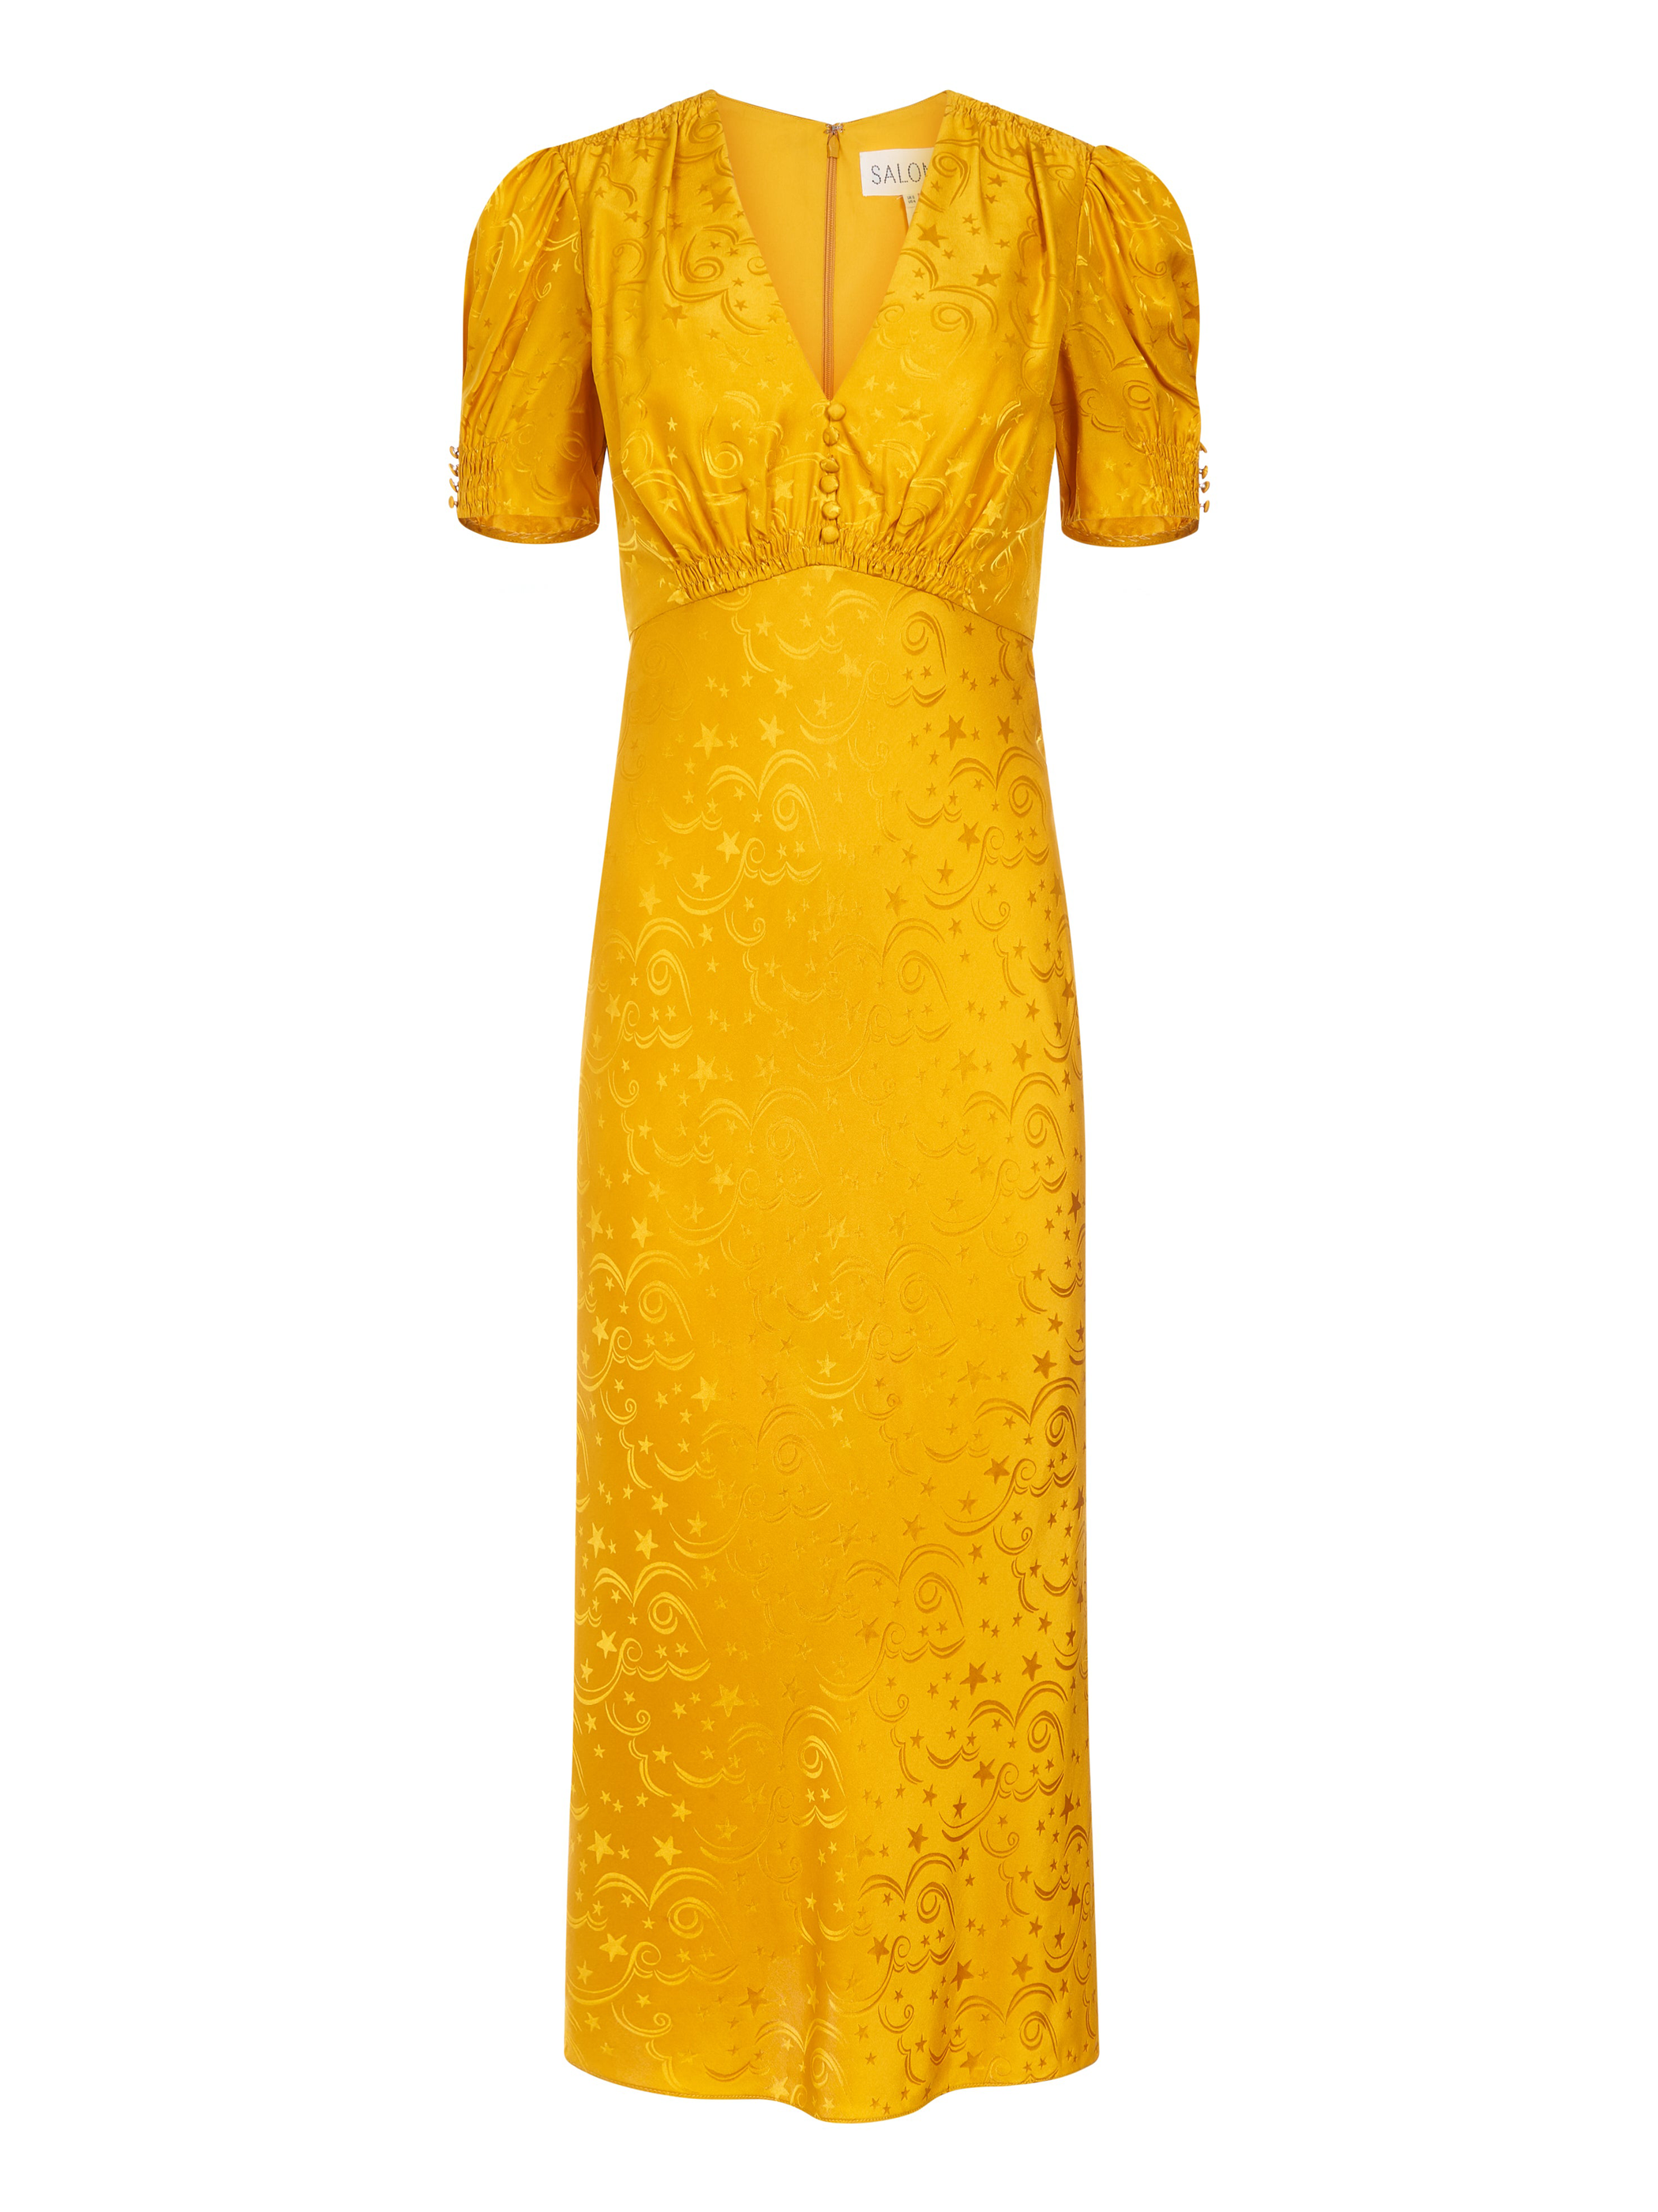 Venyx Lea B Dress in Golden Poppy